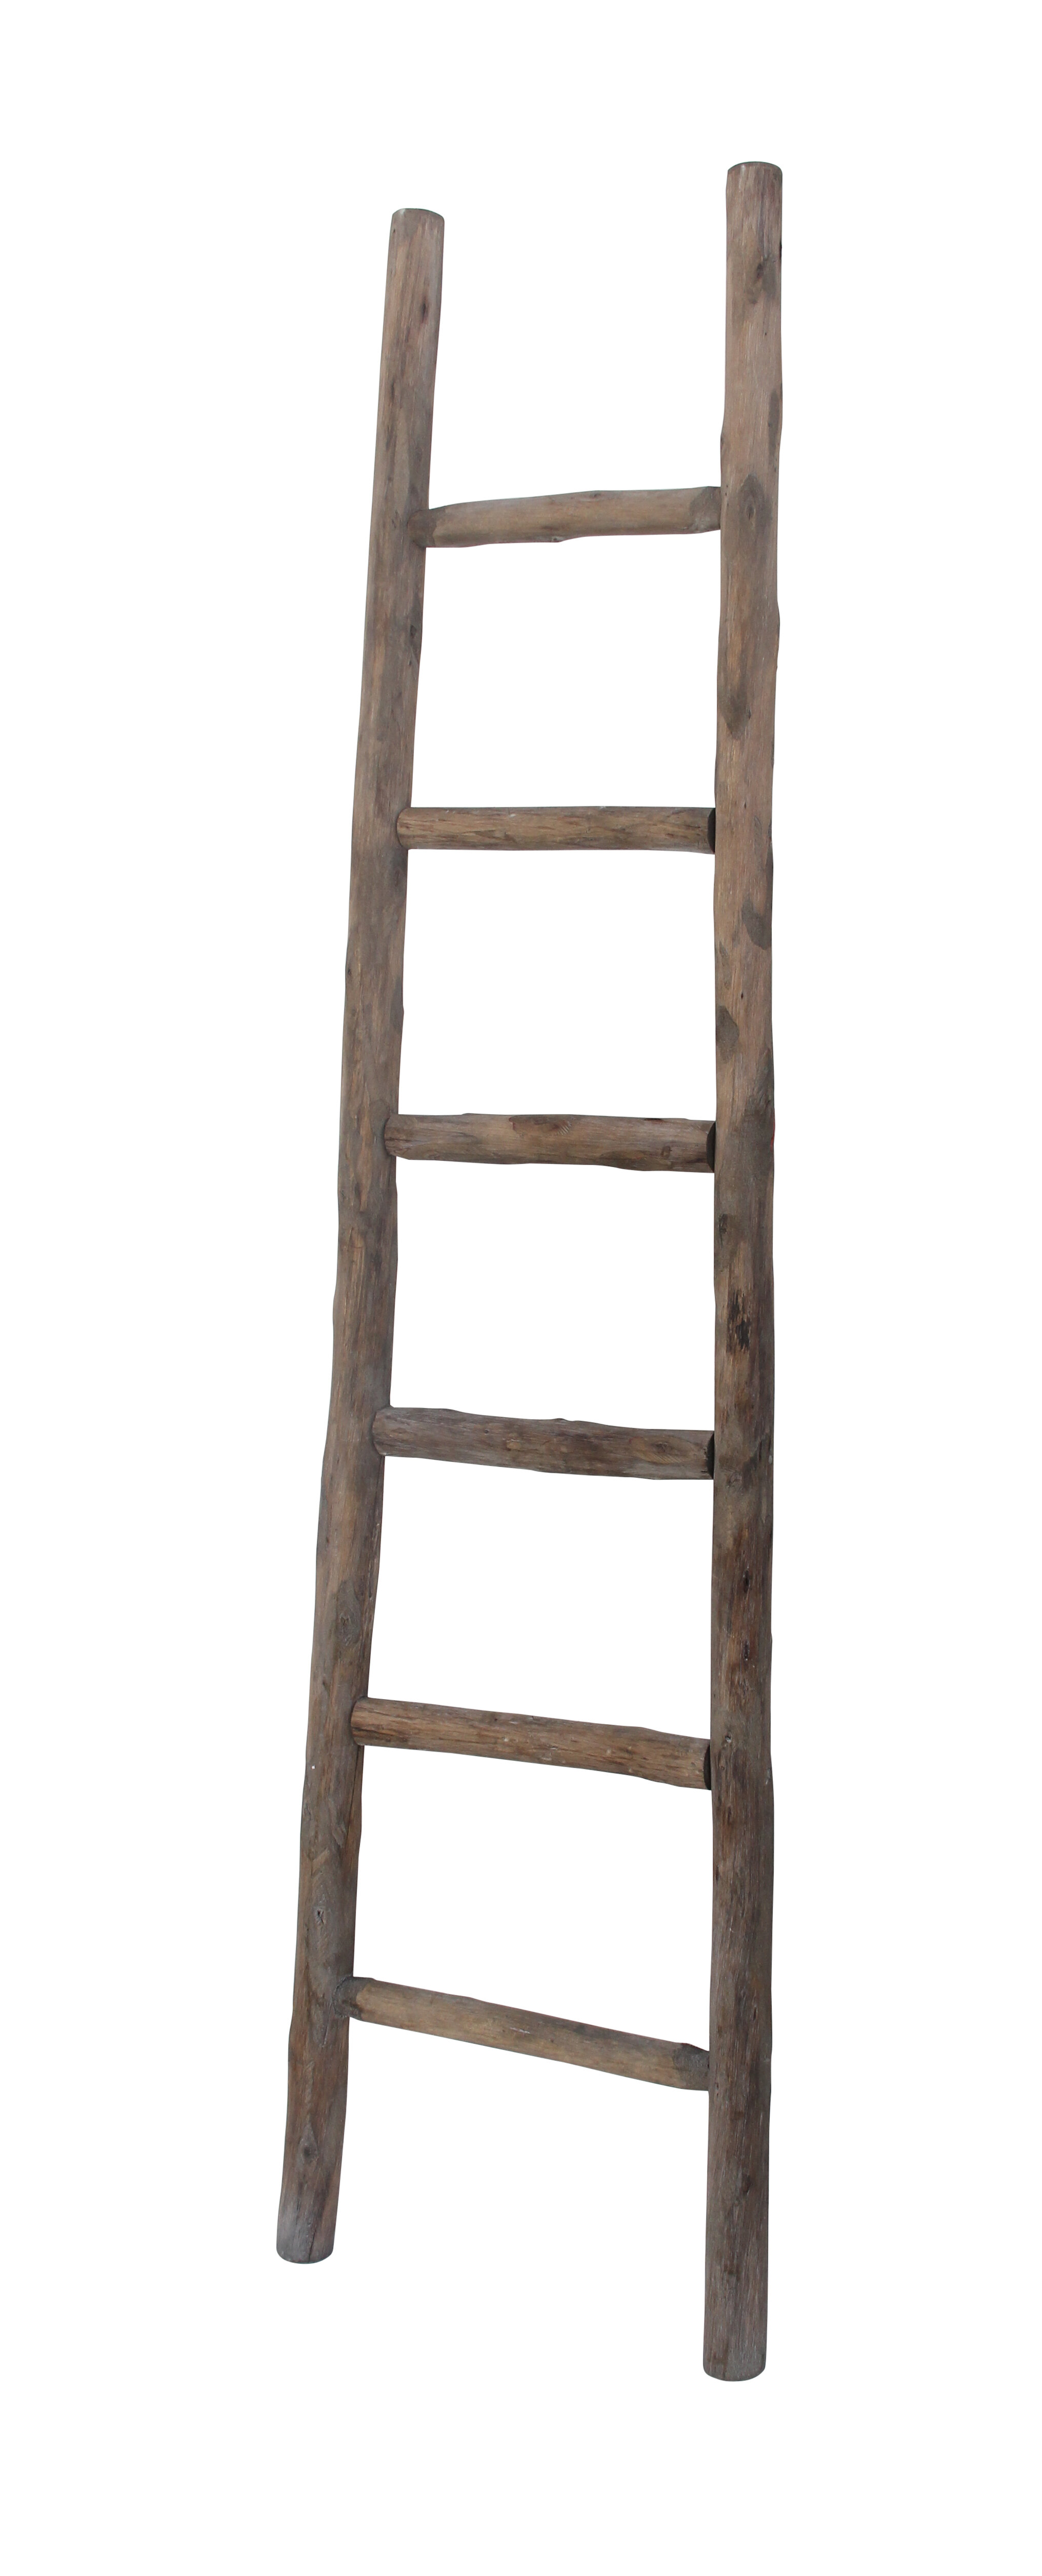 Wooden 6 Ft Blanket Ladder Reviews Joss Main